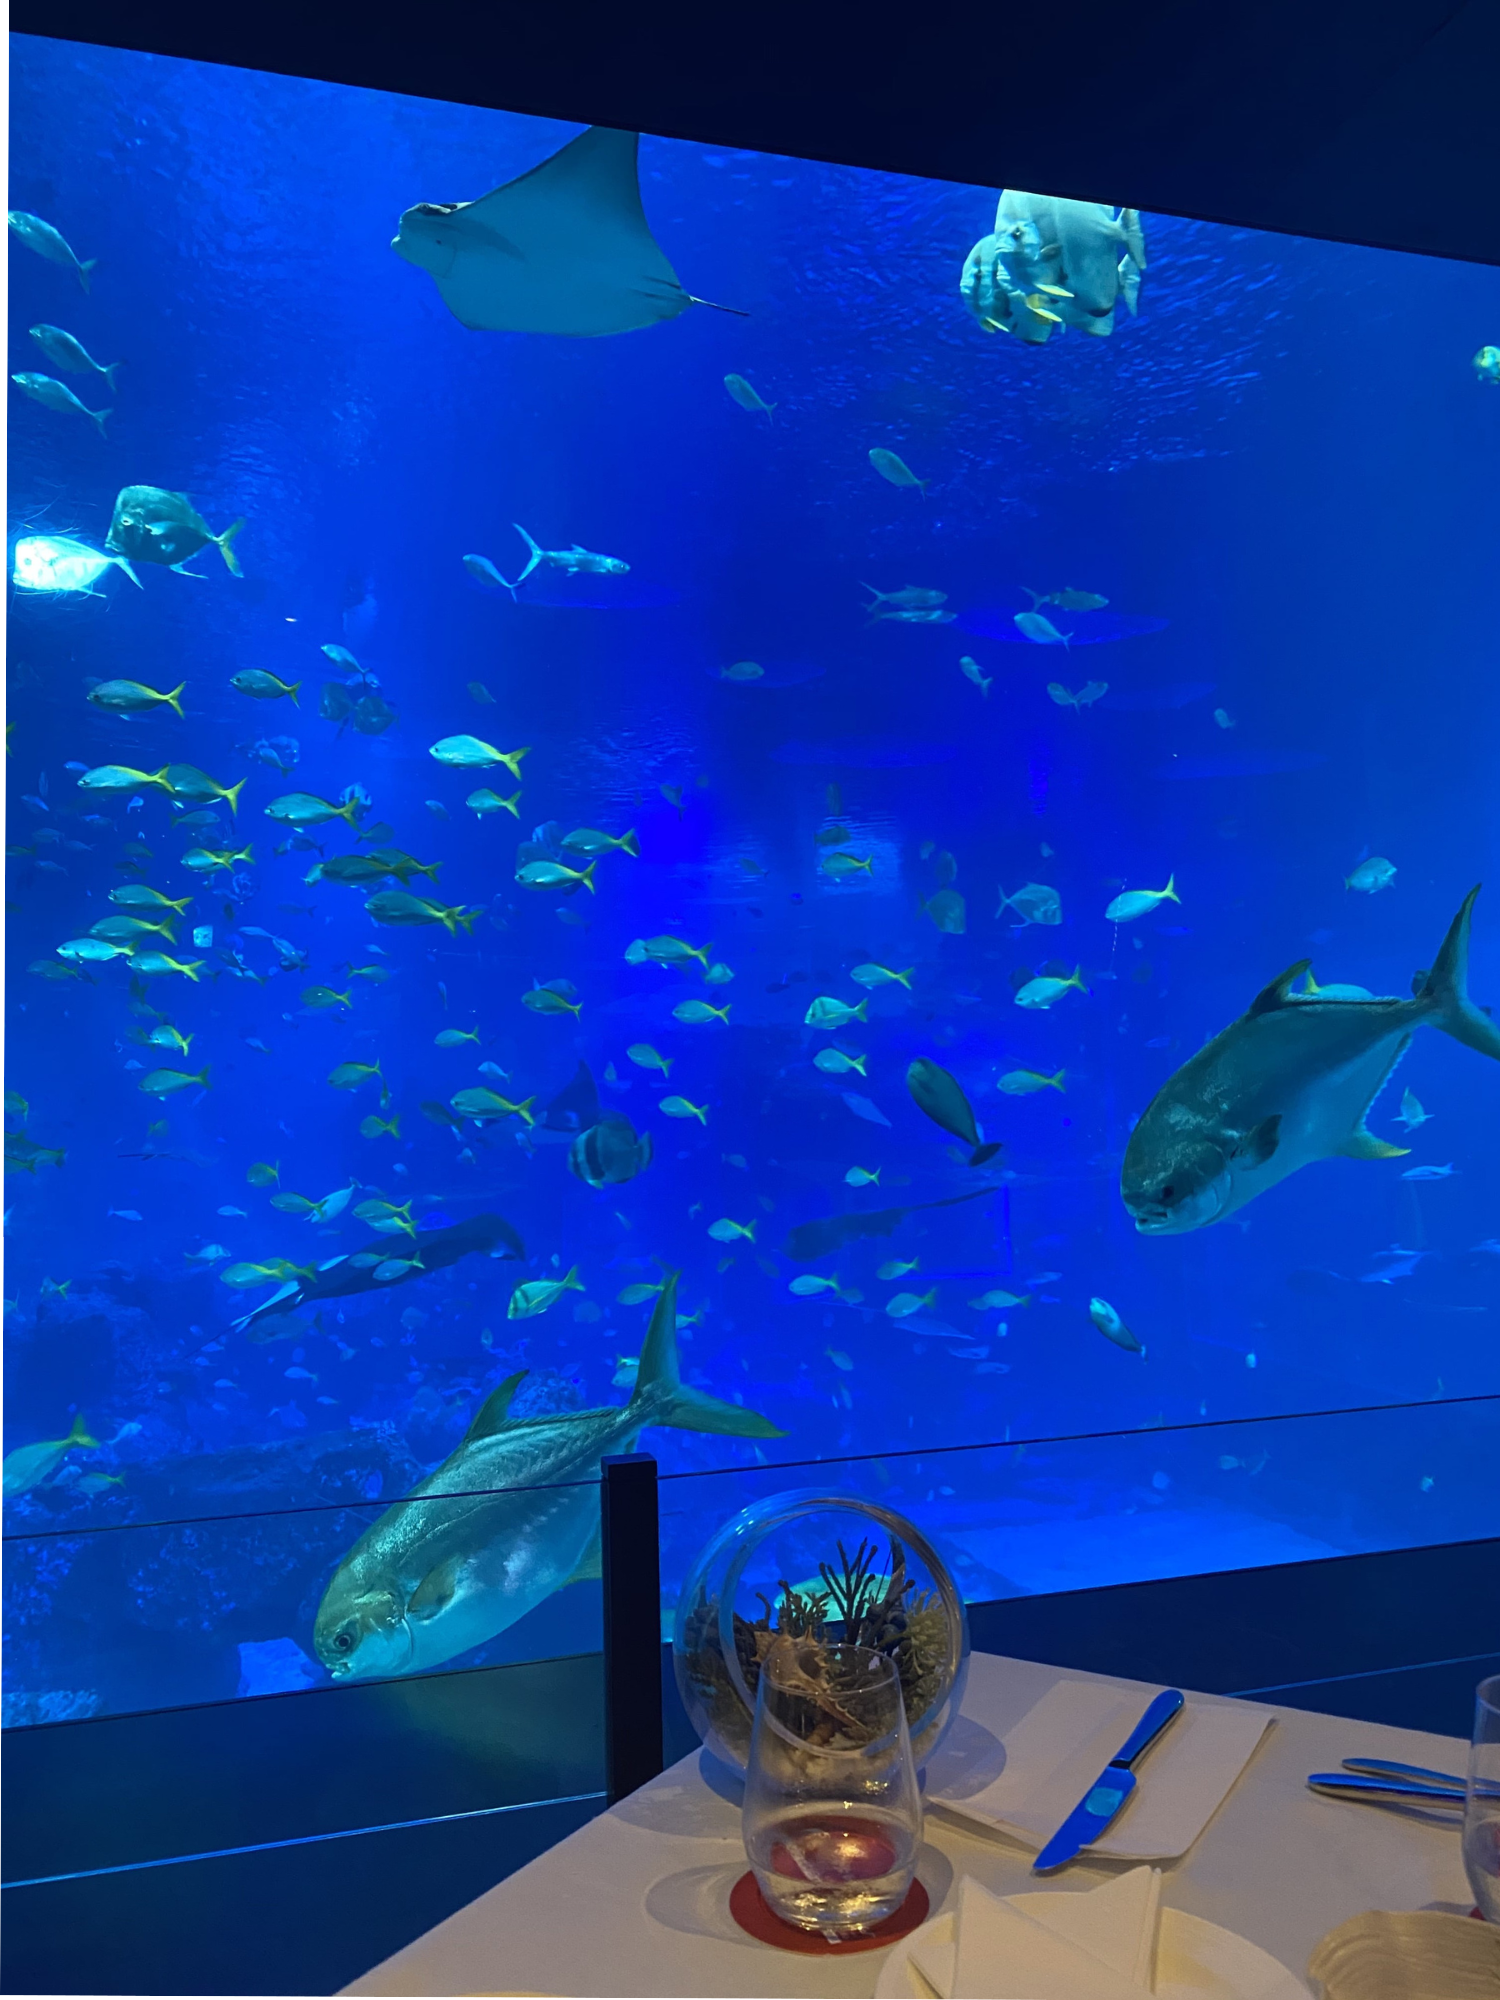 Ocean Restaurant aquarium seats